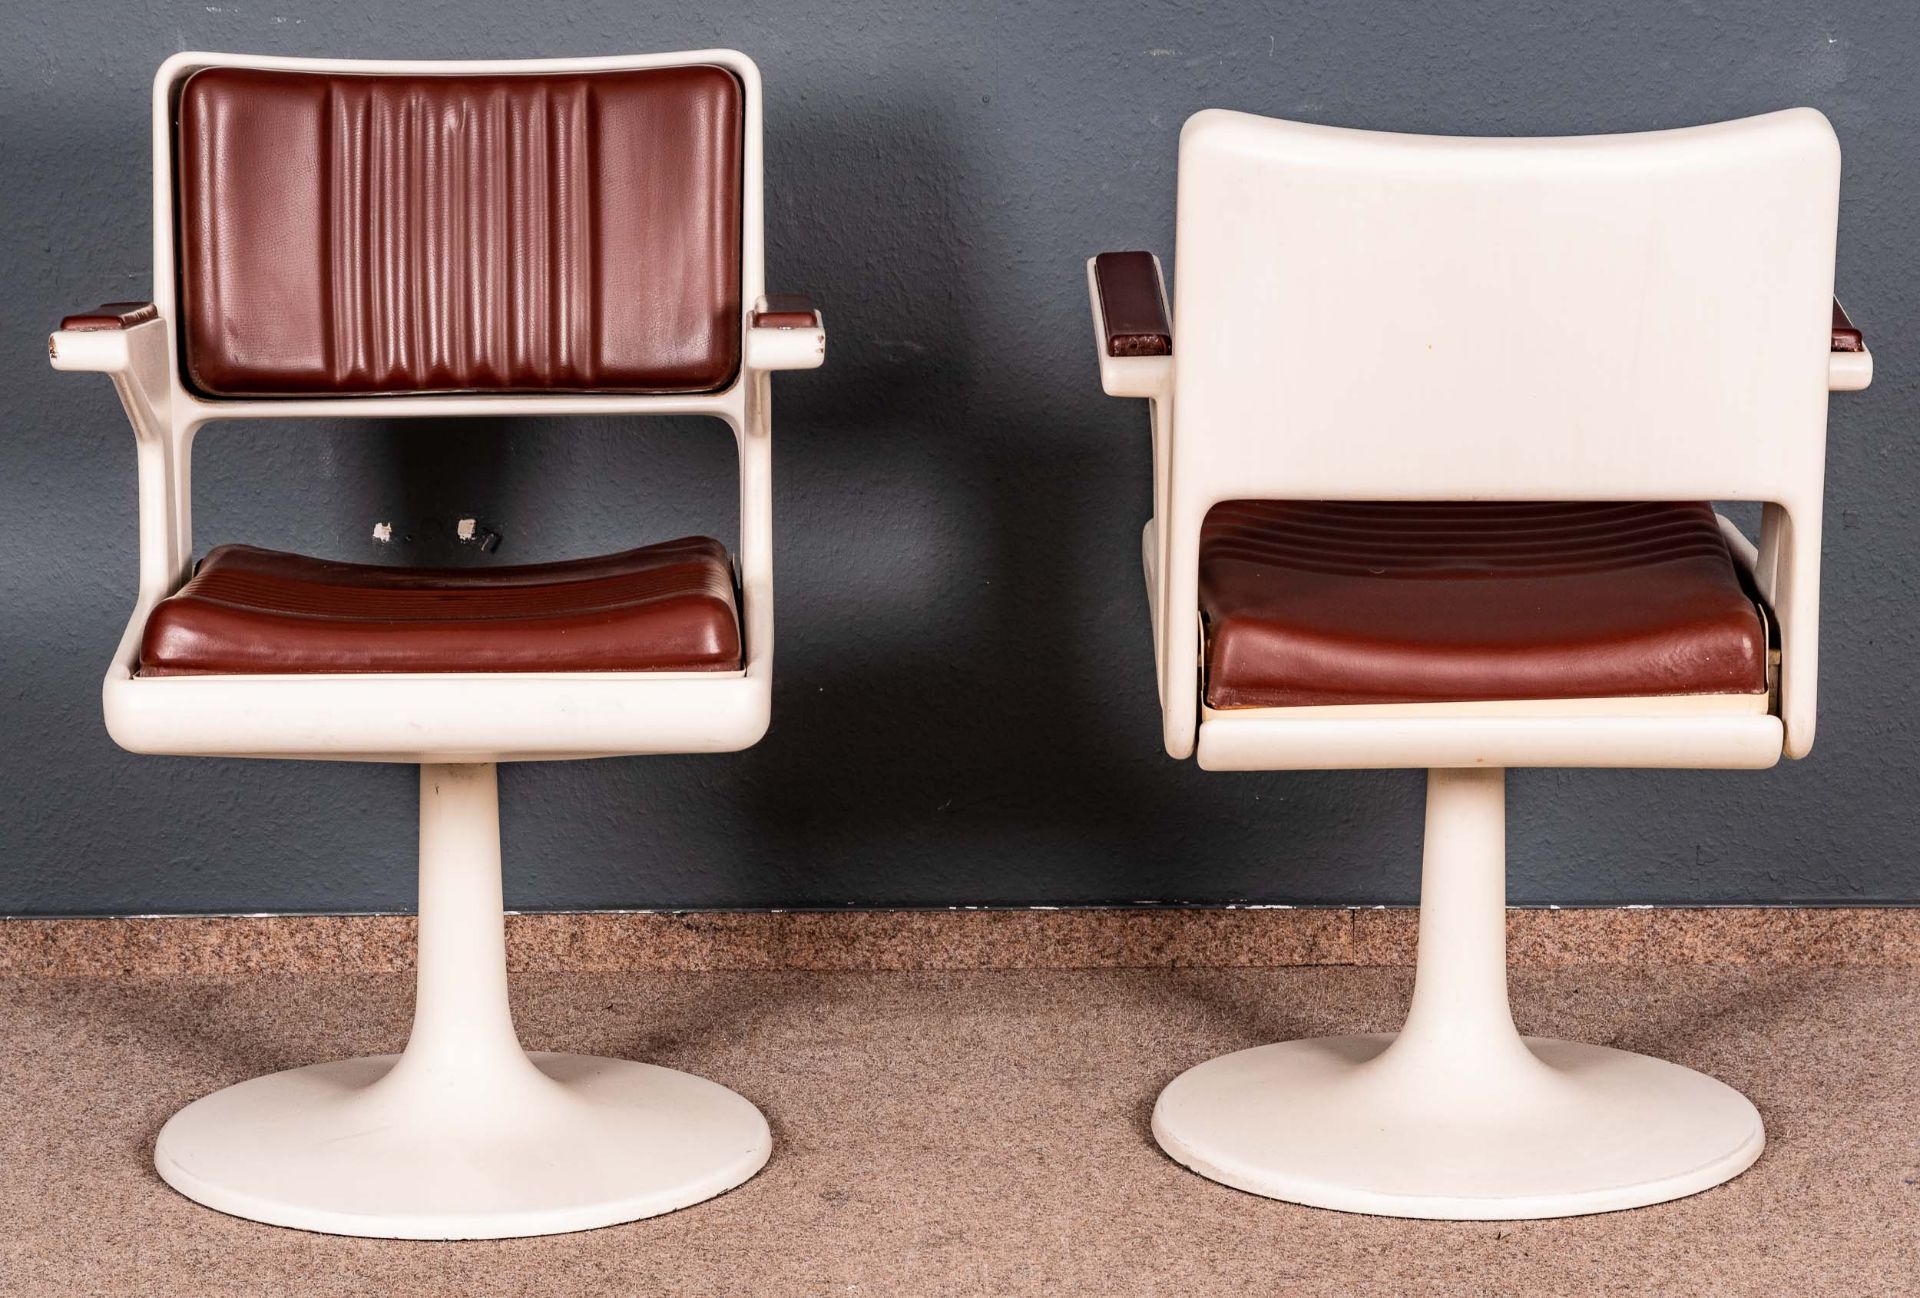 Paar drehbarer Armlehnstühle aus einem Frisörsalon der 1960er/70er Jahre. Kunststoff und Metall, he - Bild 3 aus 5